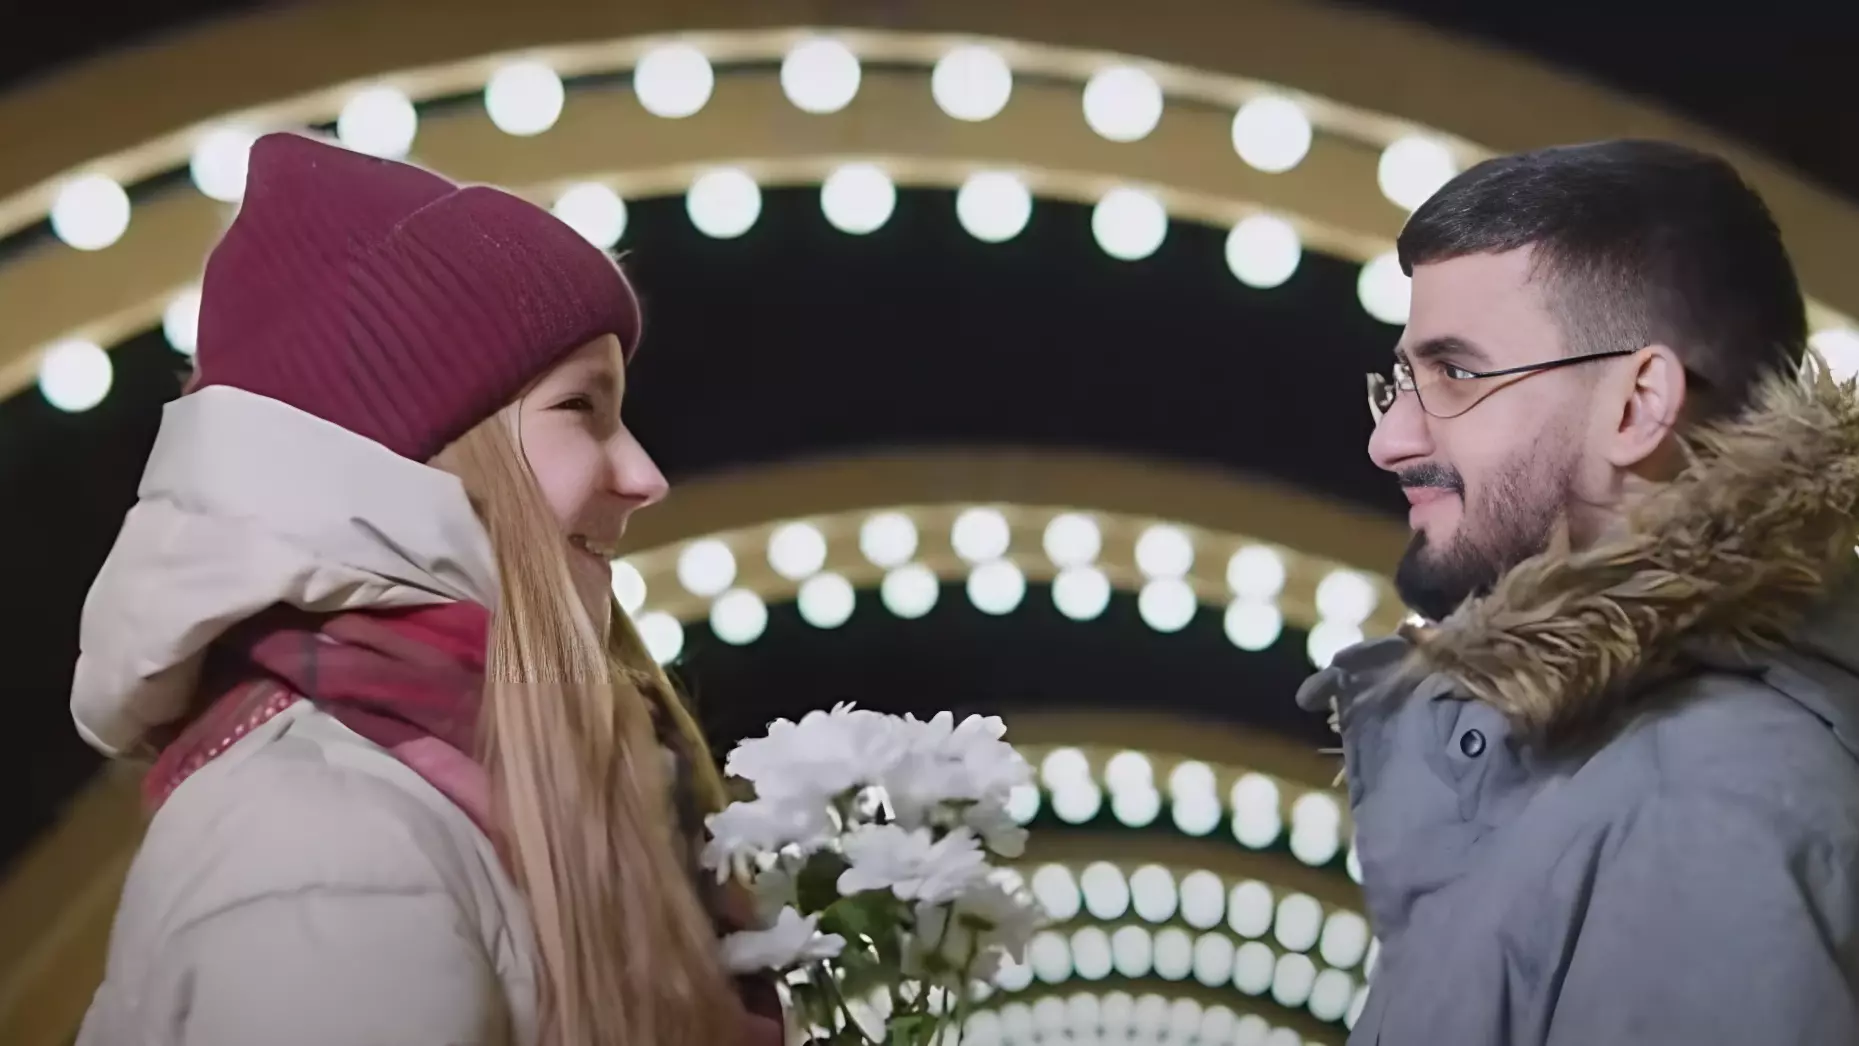 Согласно данным из видеоролика, 12 процентов браков в России являются межнациональными.